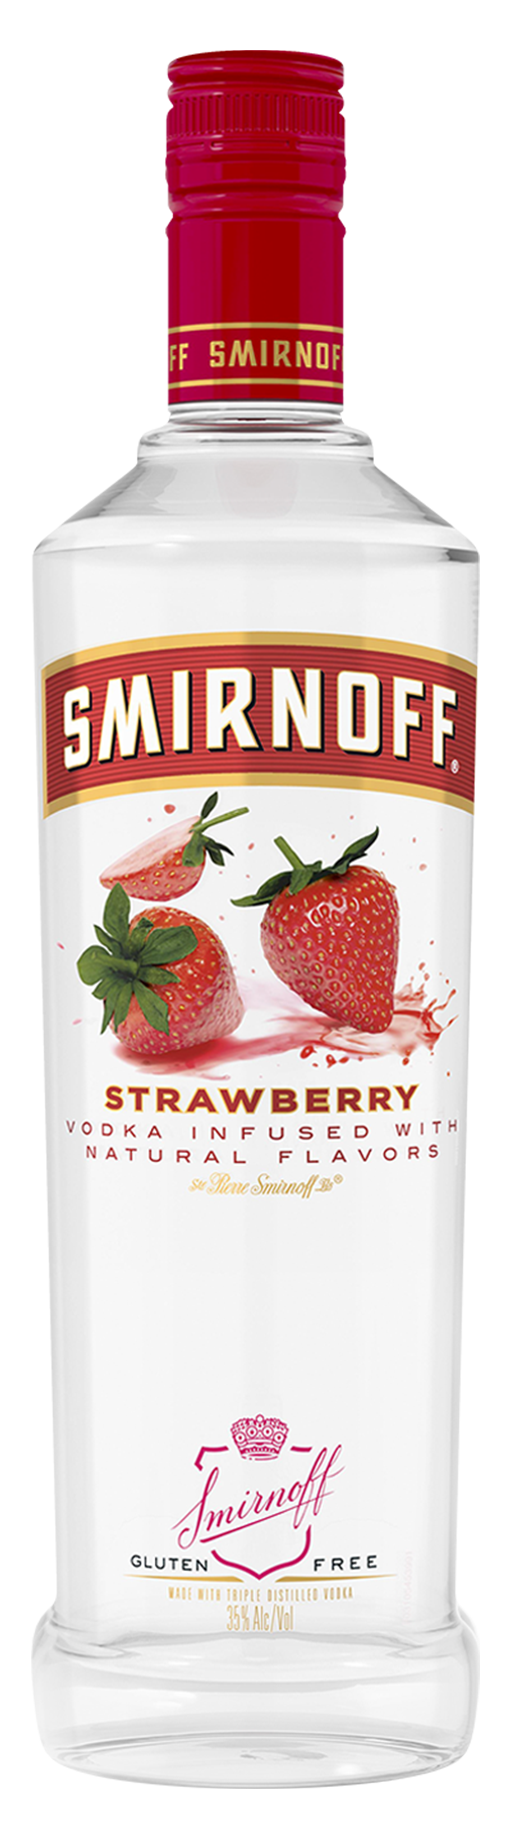 SMIRNOFF STRAWBERRY Vodka BeverageWarehouse